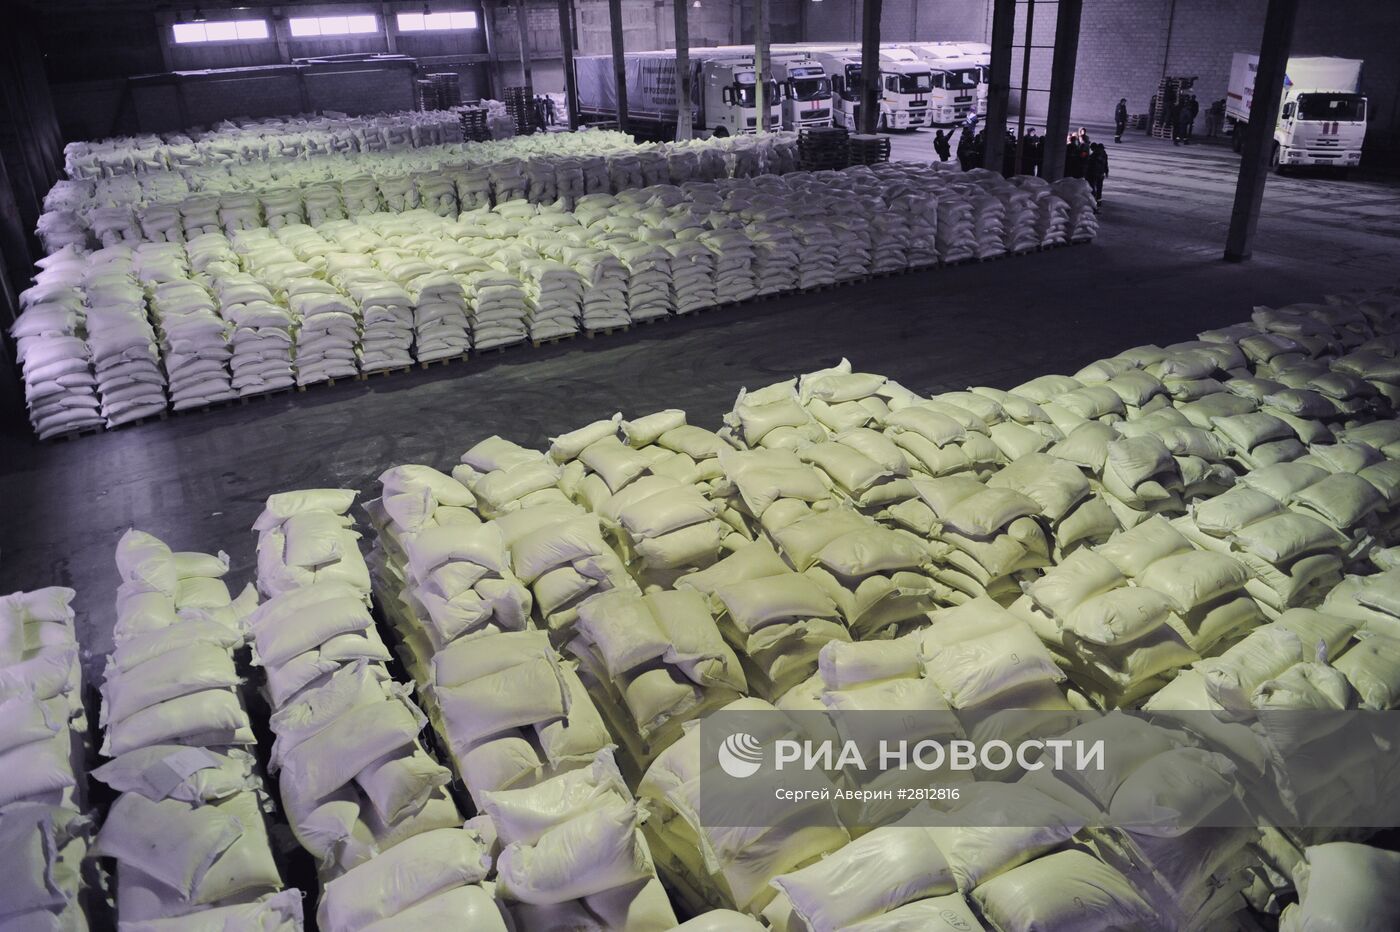 Прибытие 50-й колонны МЧС с гуманитарной помощью в Донецк